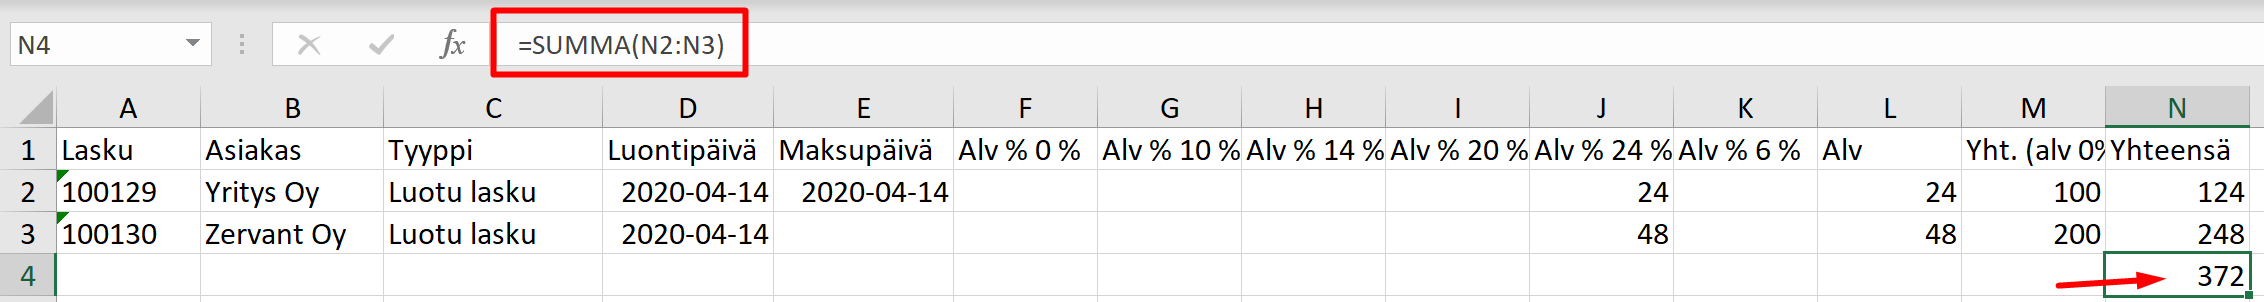 Lisää tapahtumien kokonaissumma Excelin SUMMA-funktiolla